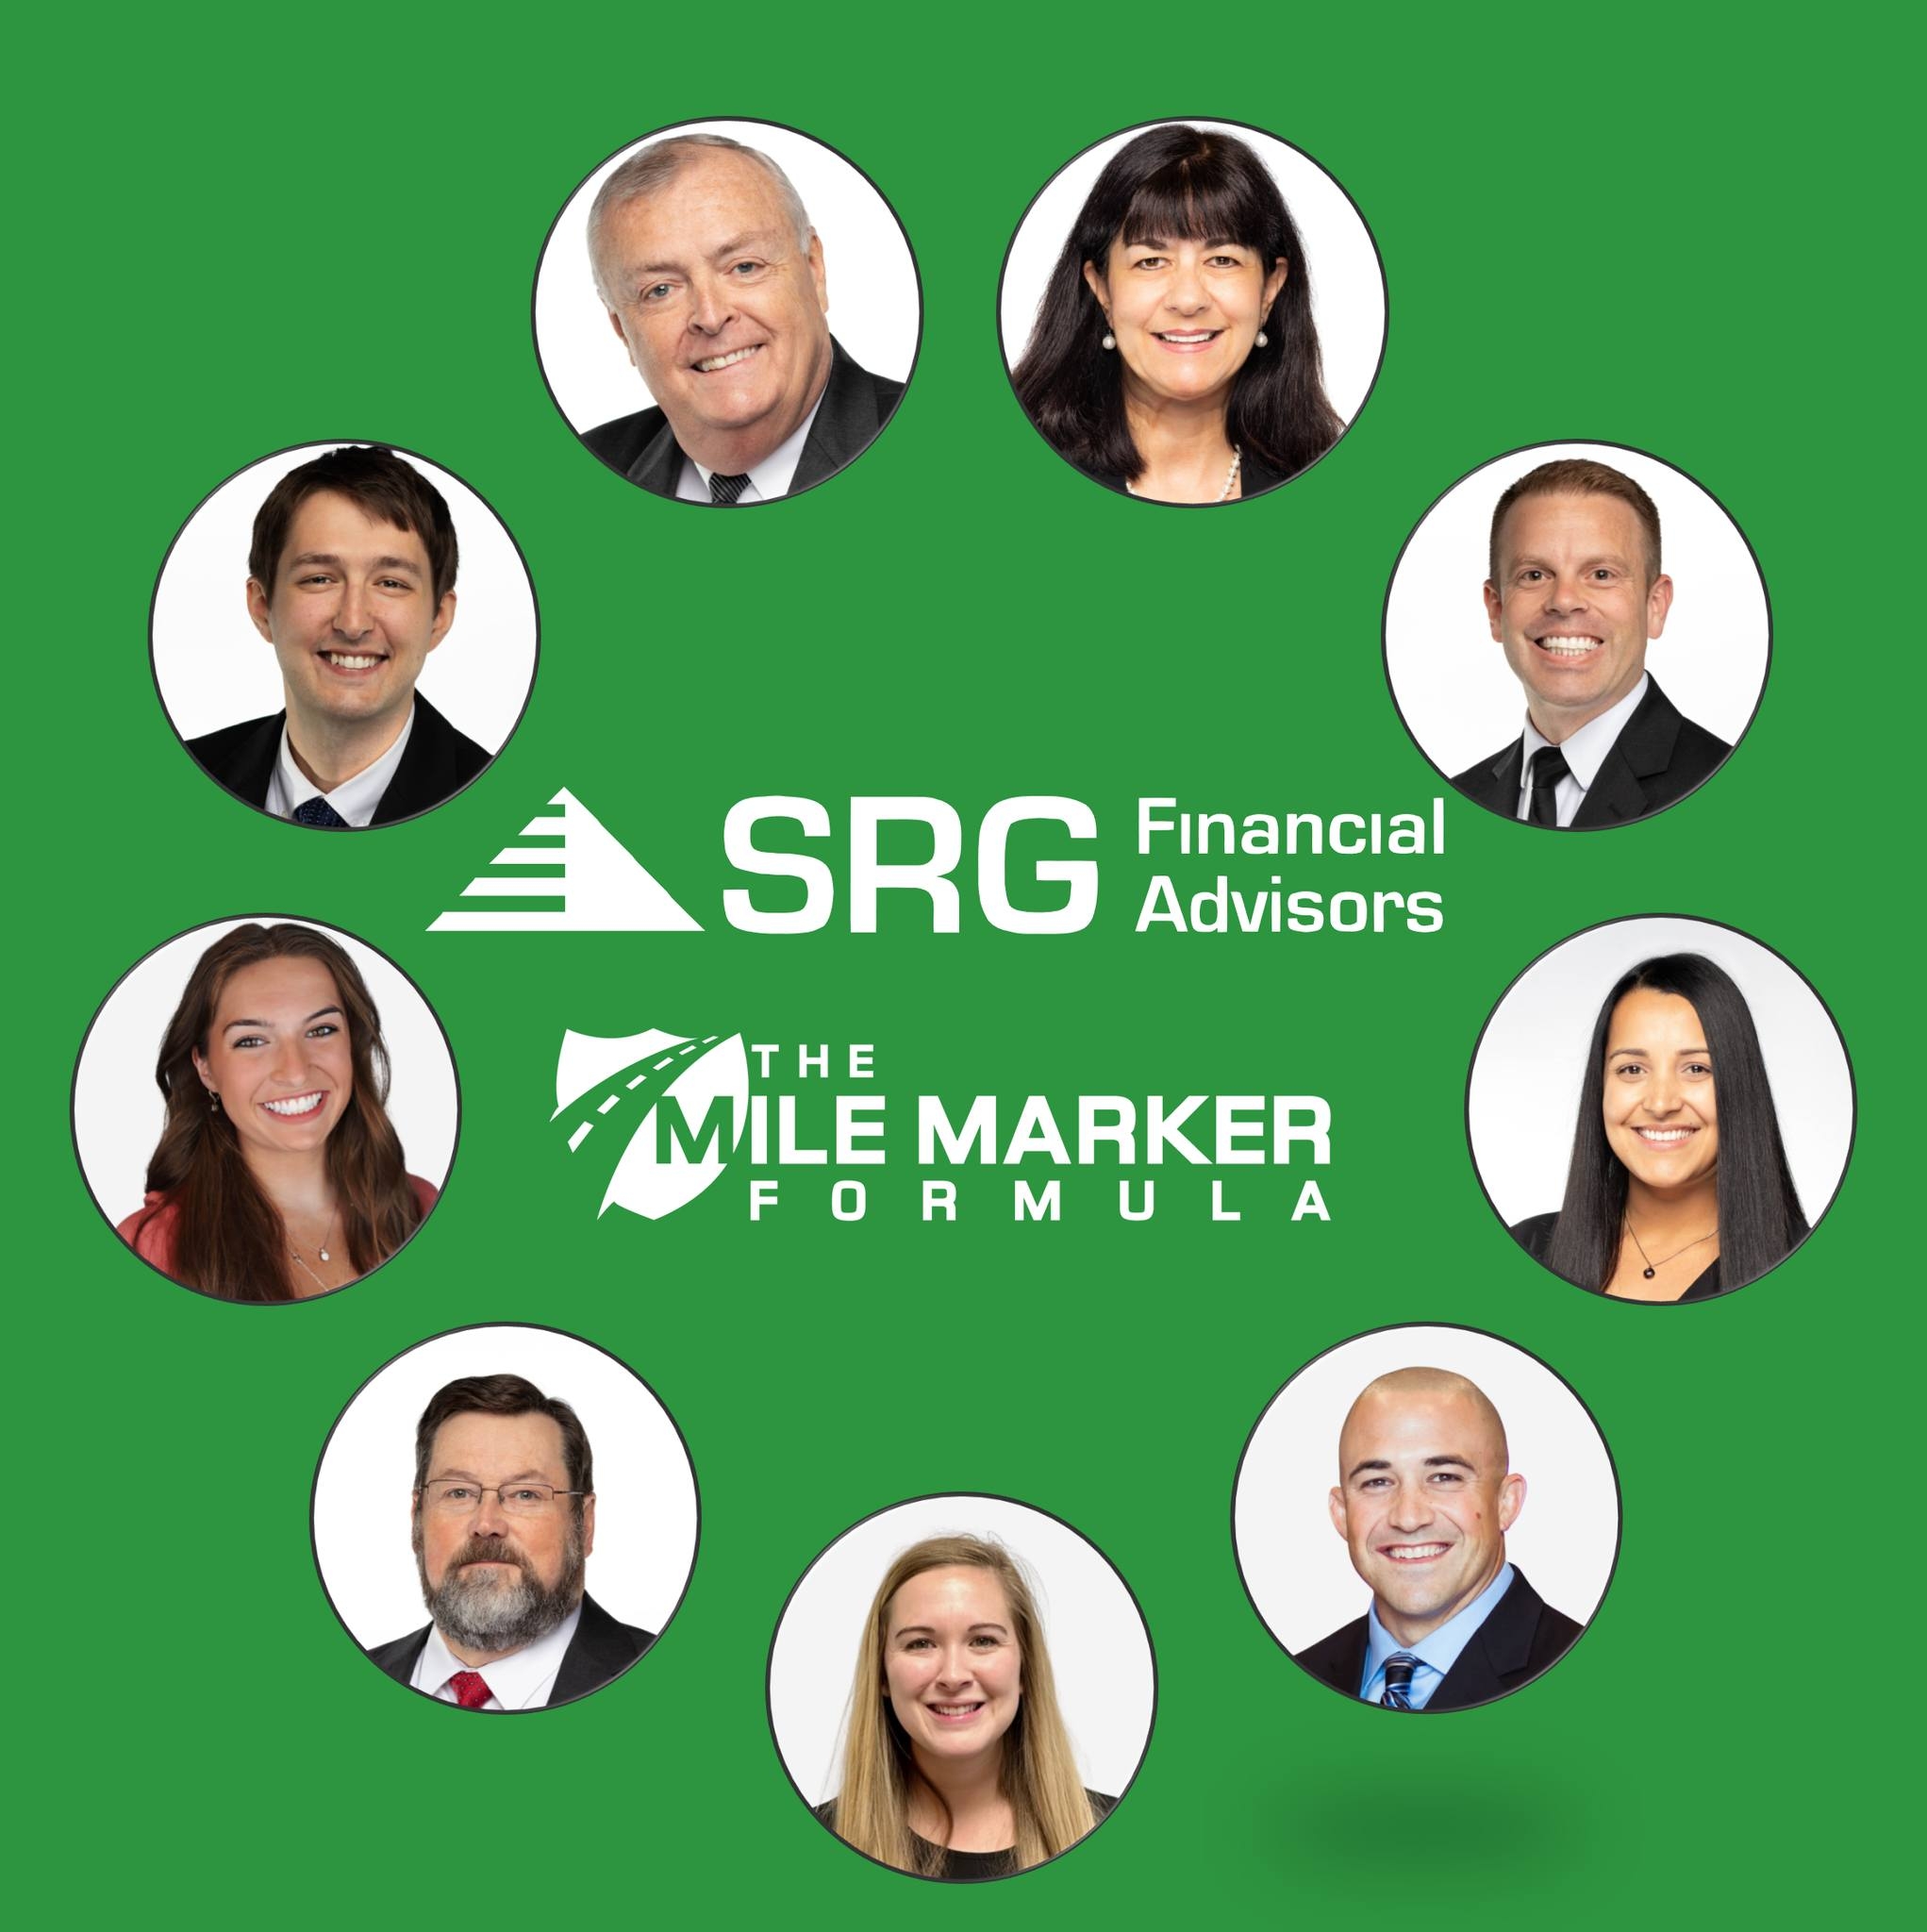 SRG Financial Advisors